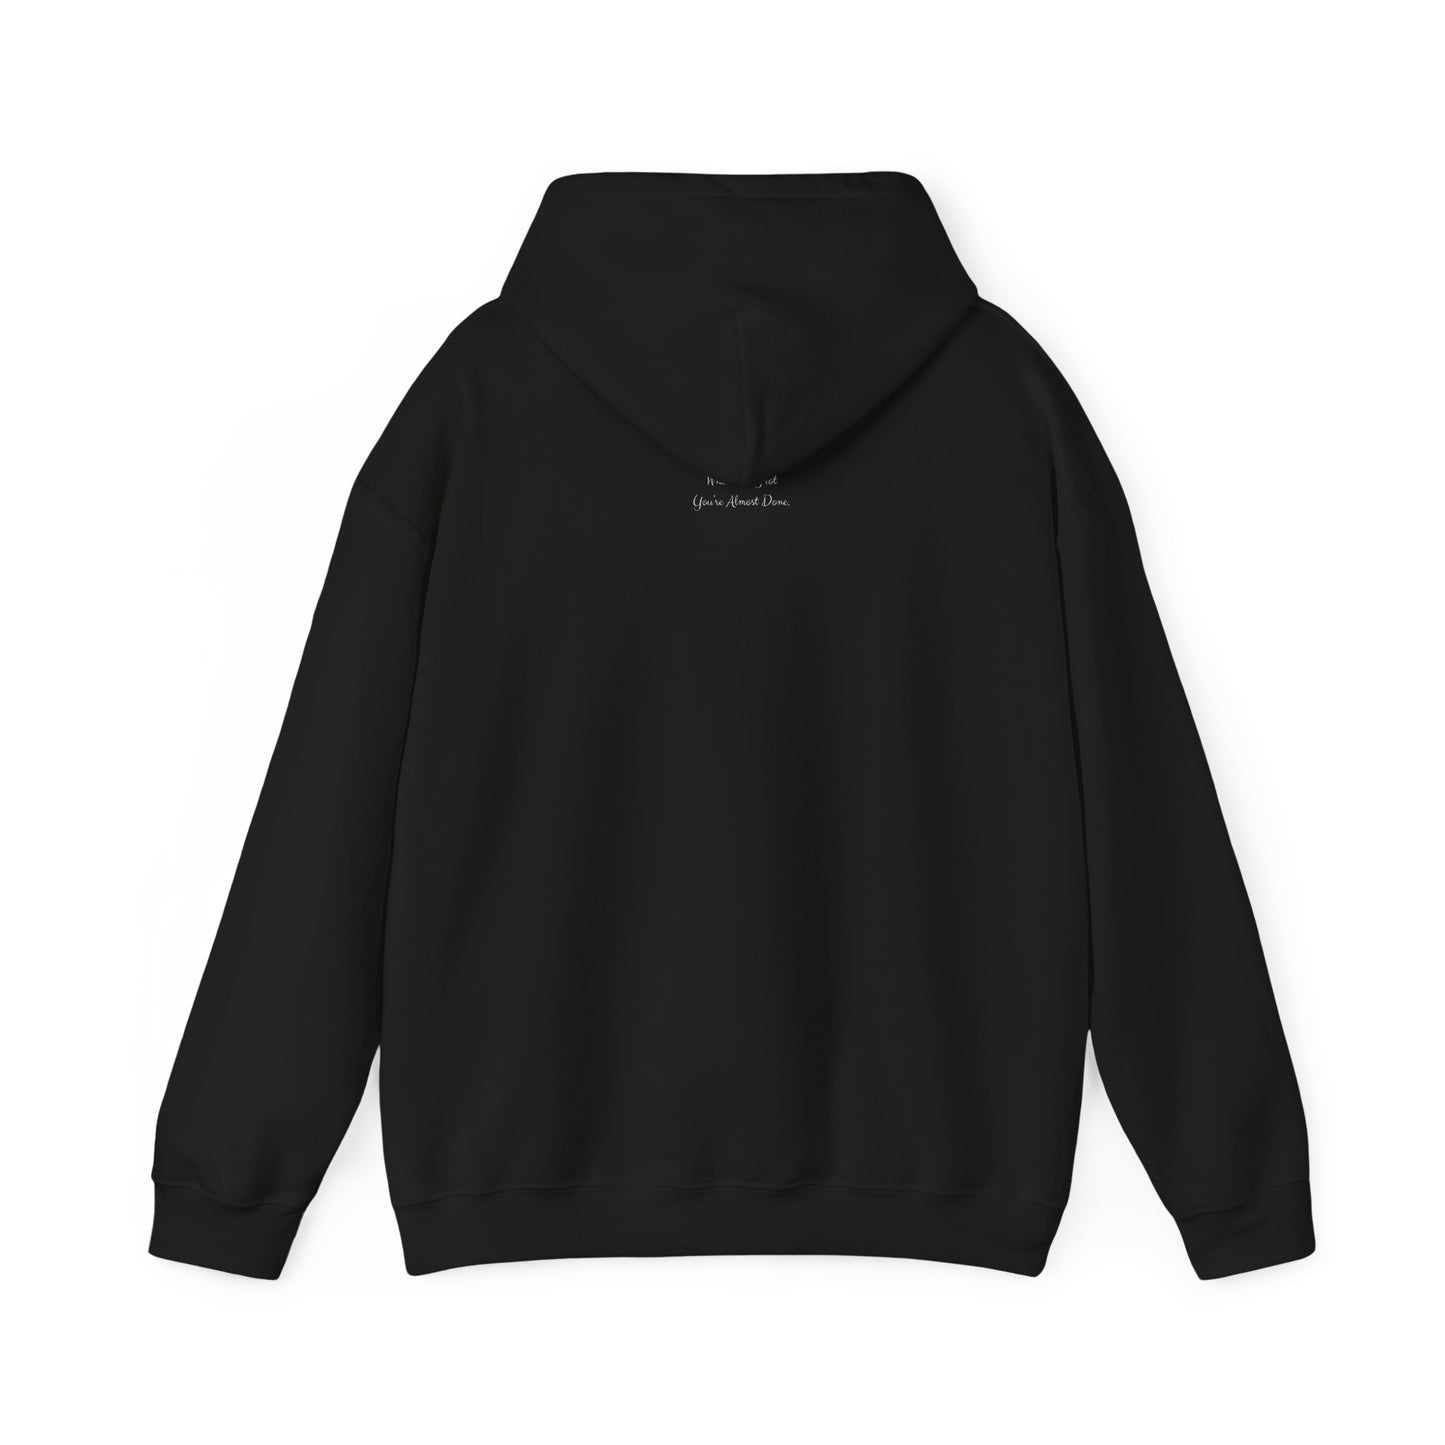 Black & Blessed Hooded Sweatshirt